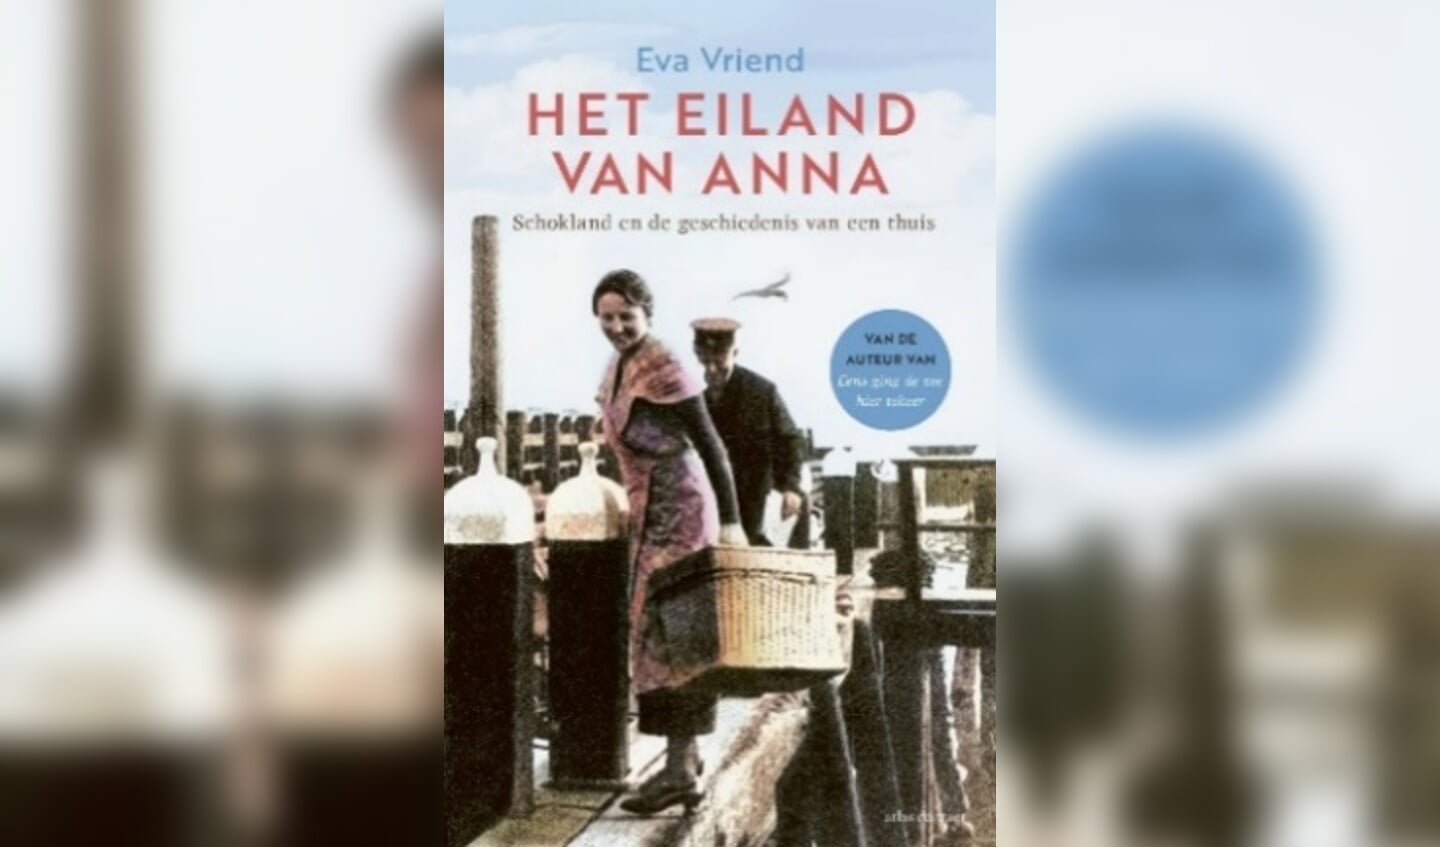 Boekcover van boek met verhaal over het verdwenen eiland Schokland. 